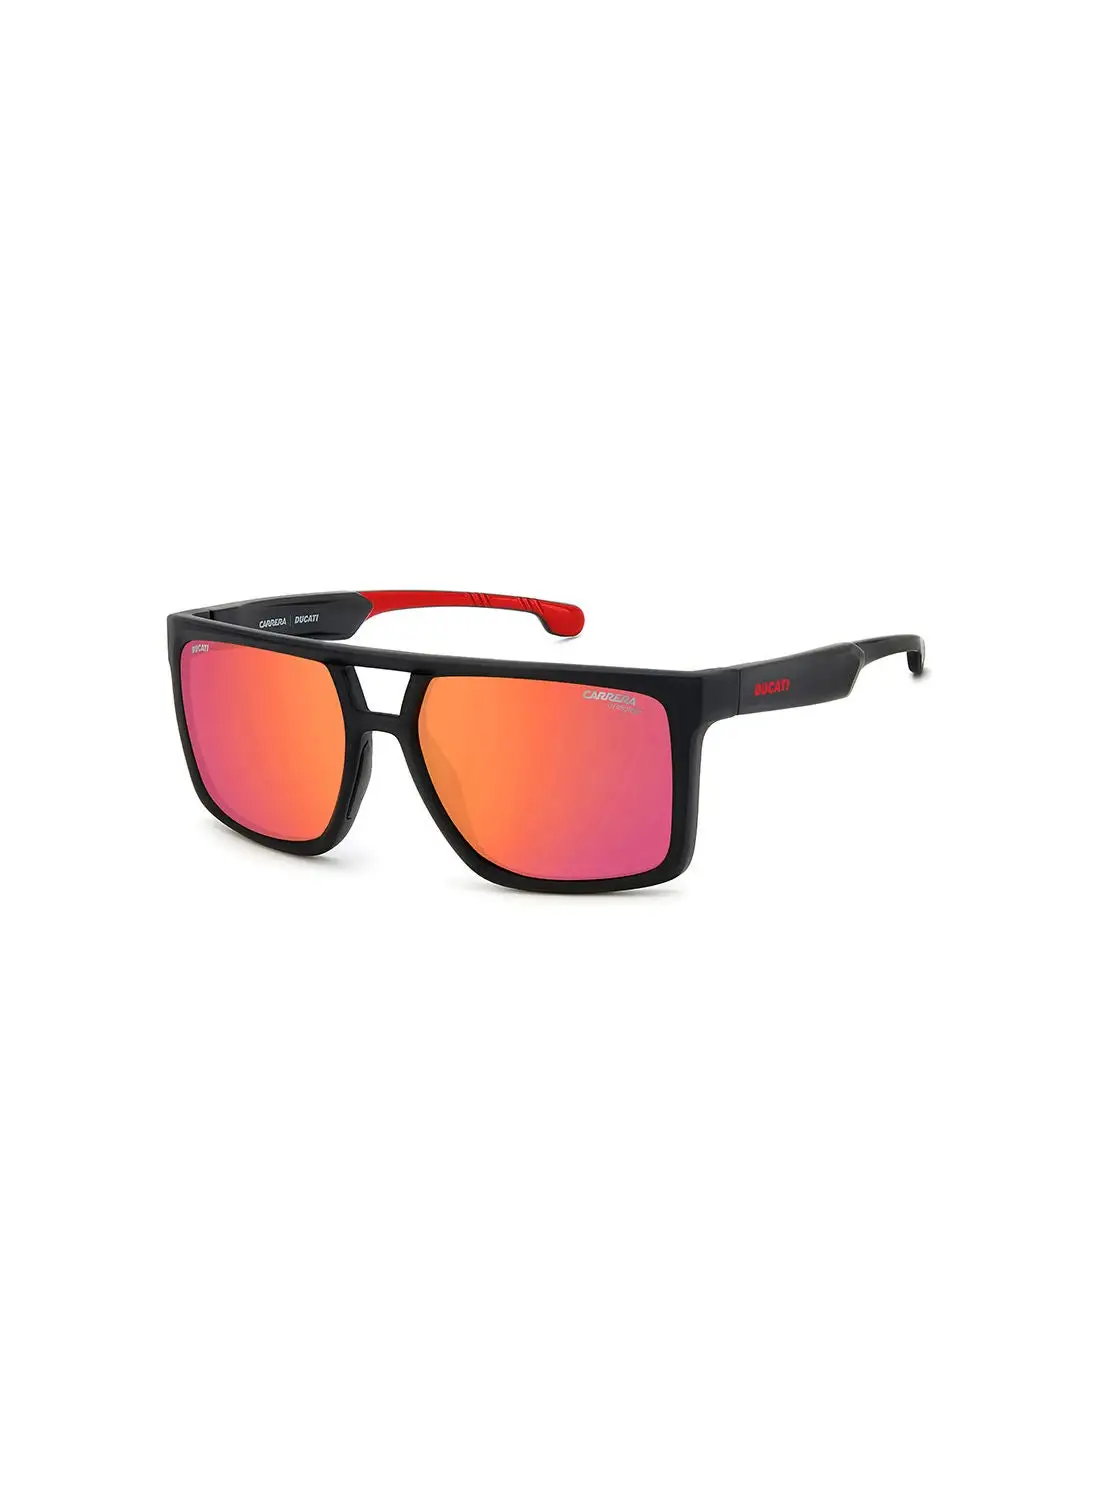 نظارة كاريرا للرجال للحماية من الأشعة فوق البنفسجية - Carduc 018/S أسود أحمر 58 - مقاس العدسة: 58 ملم